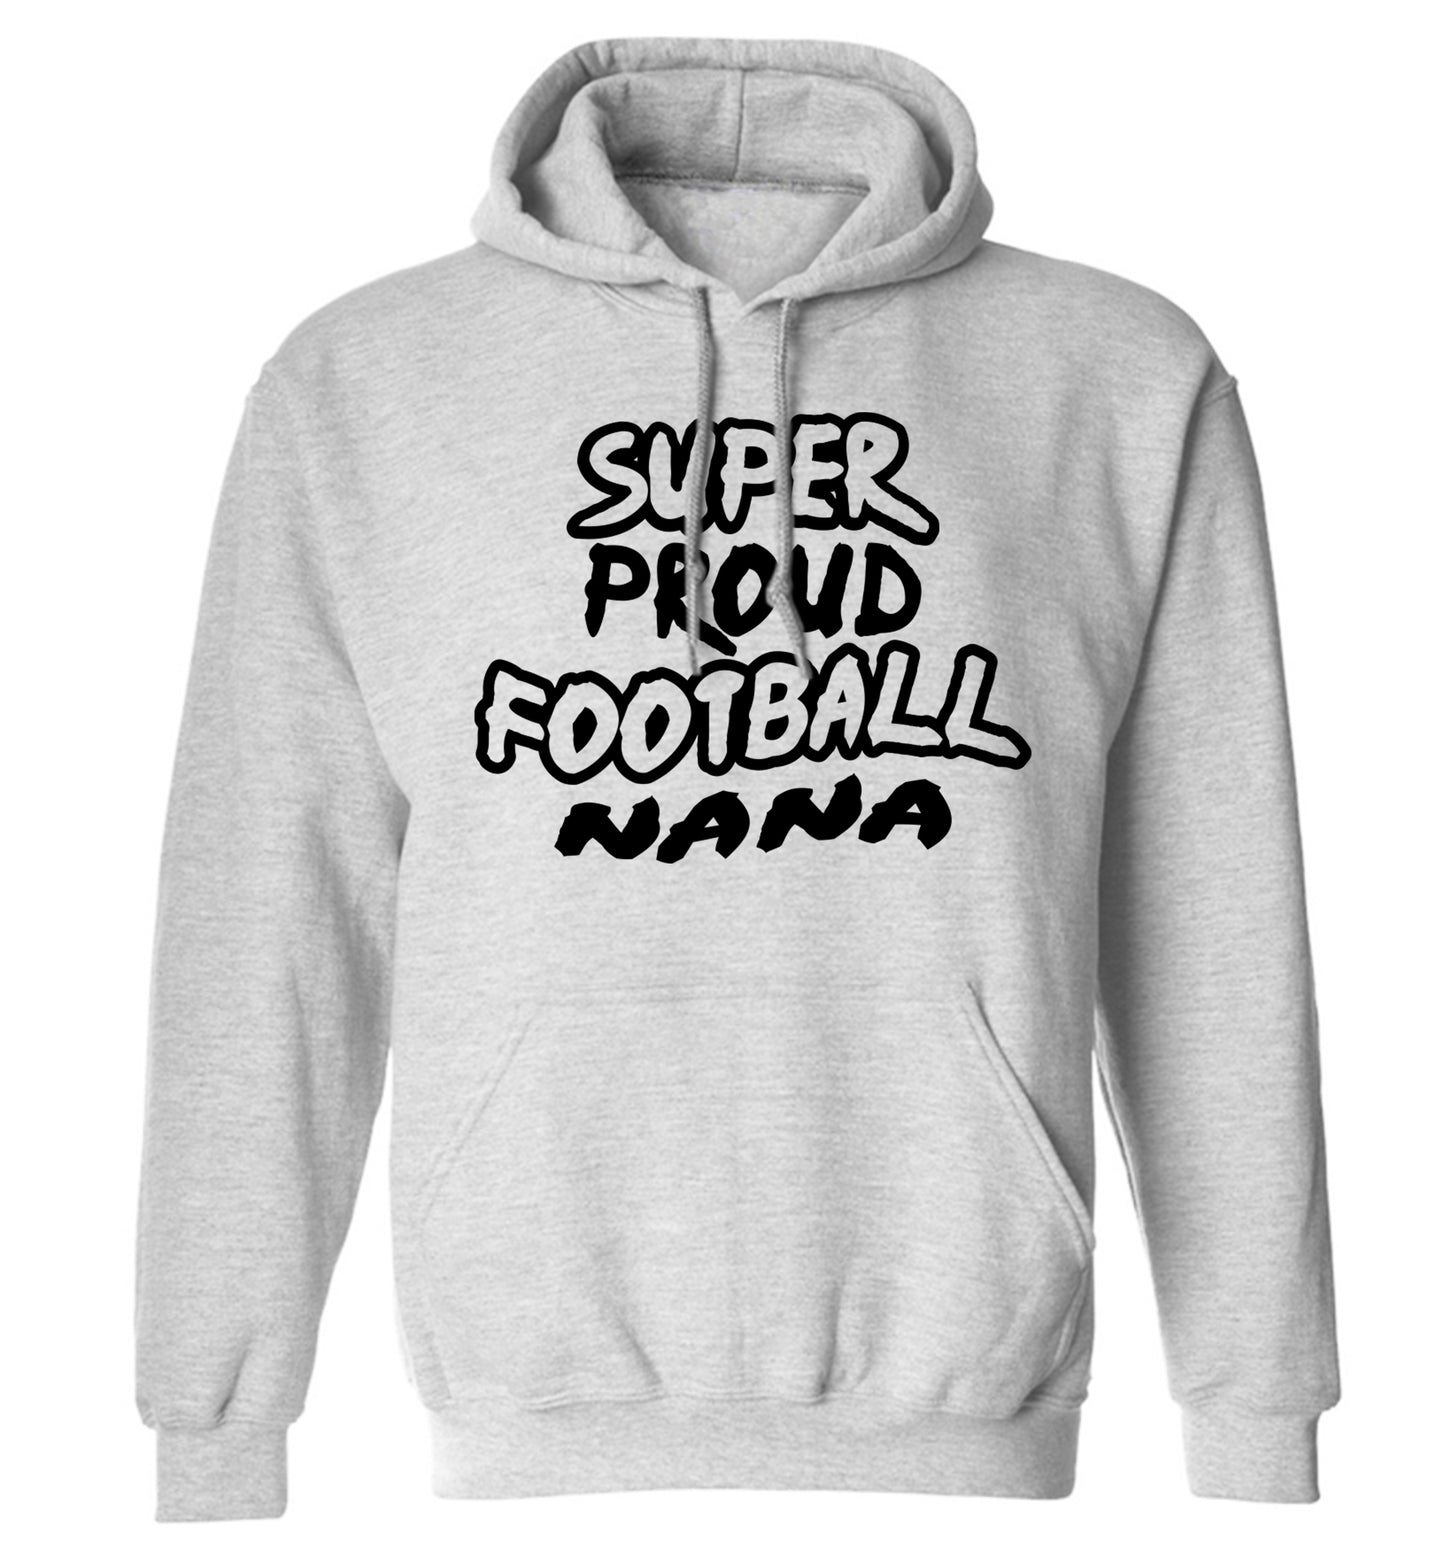 Super proud football nana adults unisexgrey hoodie 2XL